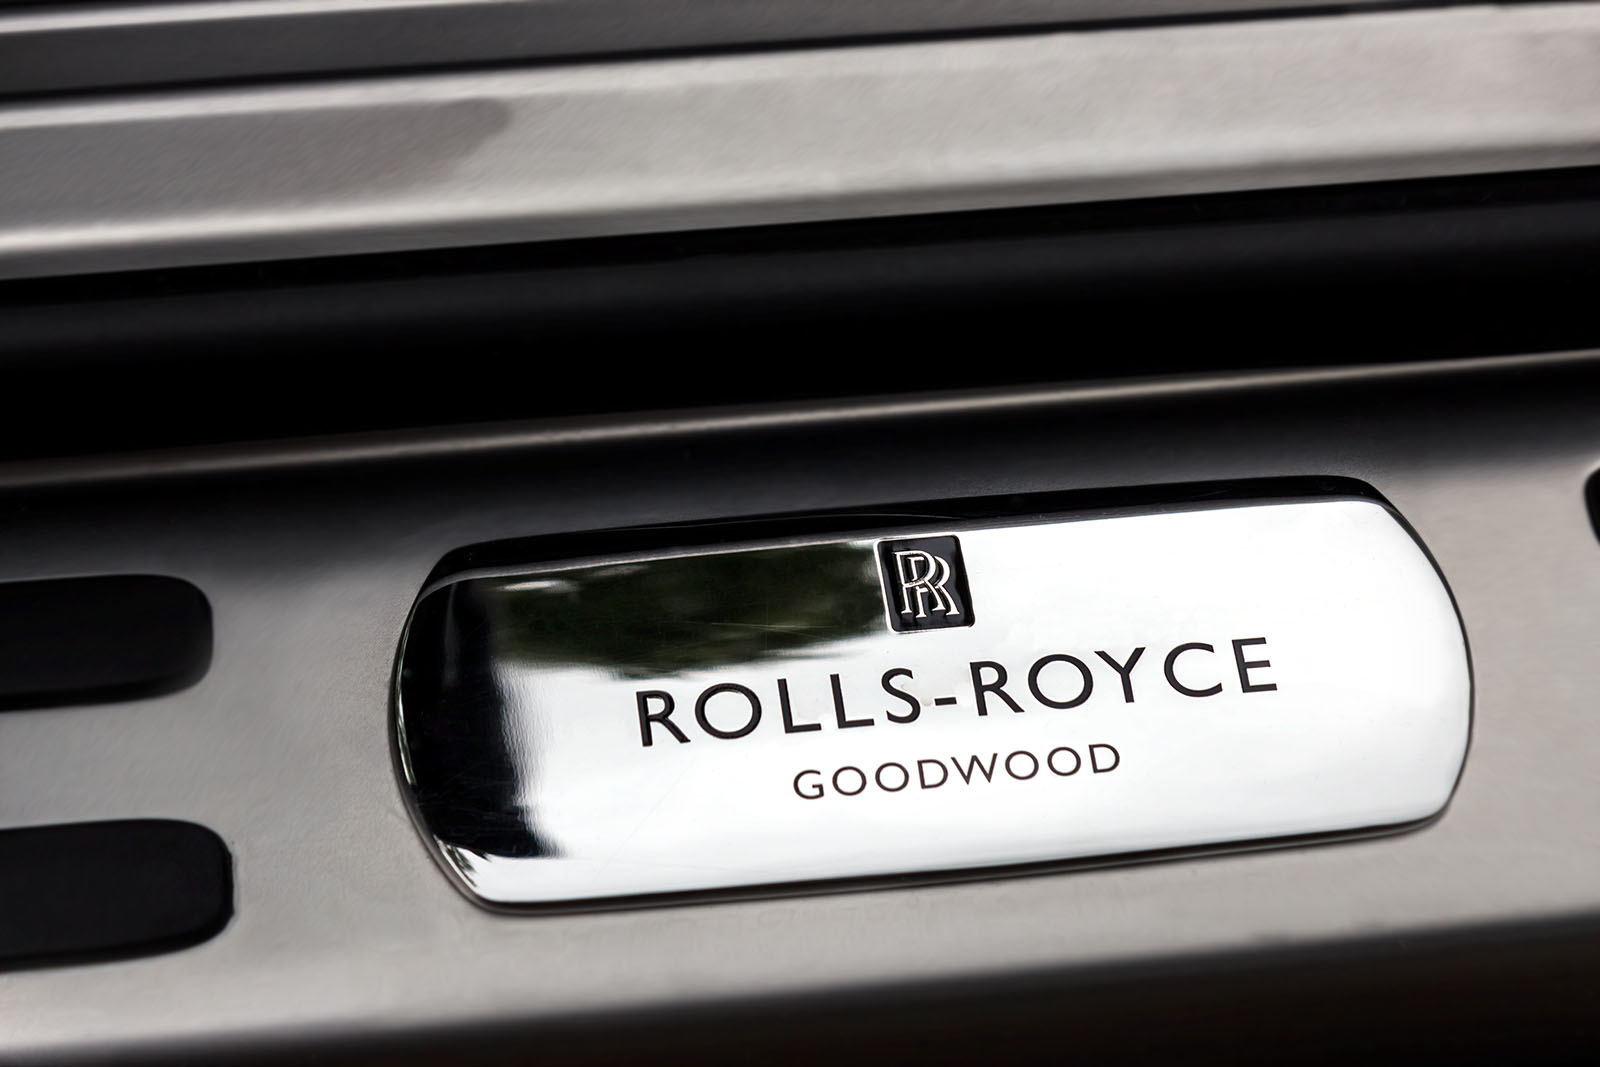 Drophead Delight in The Rolls Royce Dawn 6